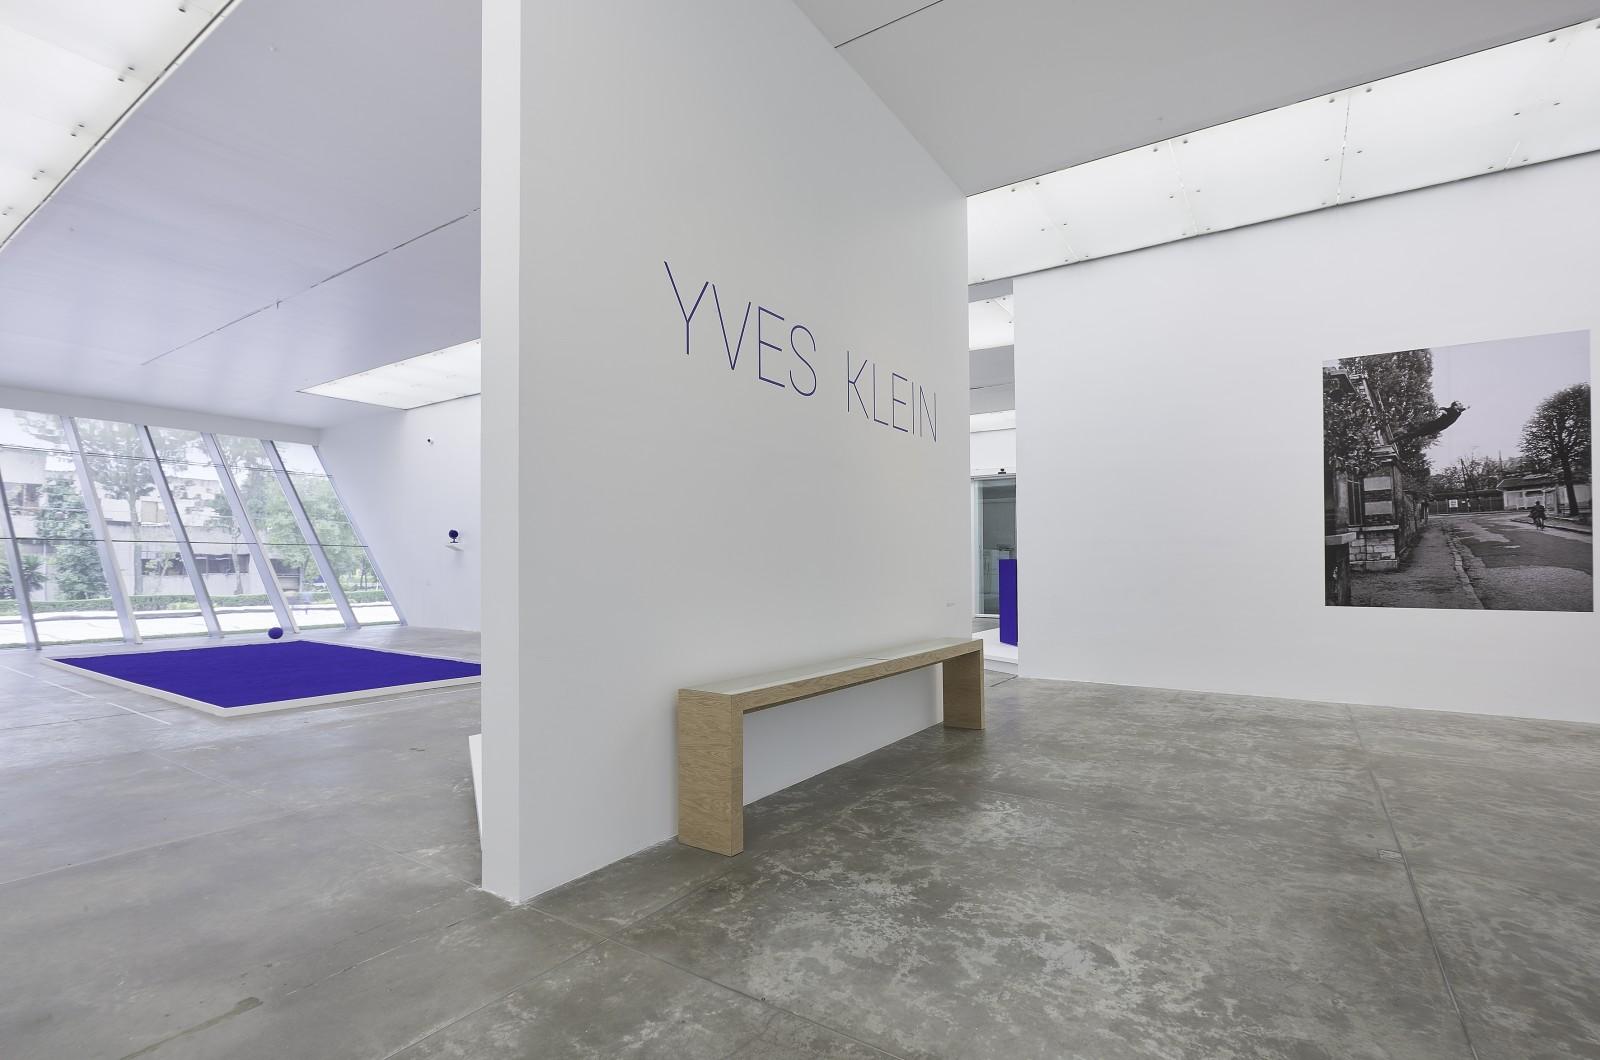 View of the exhibition, "Yves Klein", MUAC - Museo Universitario de Arte Contemporáneo, 2017